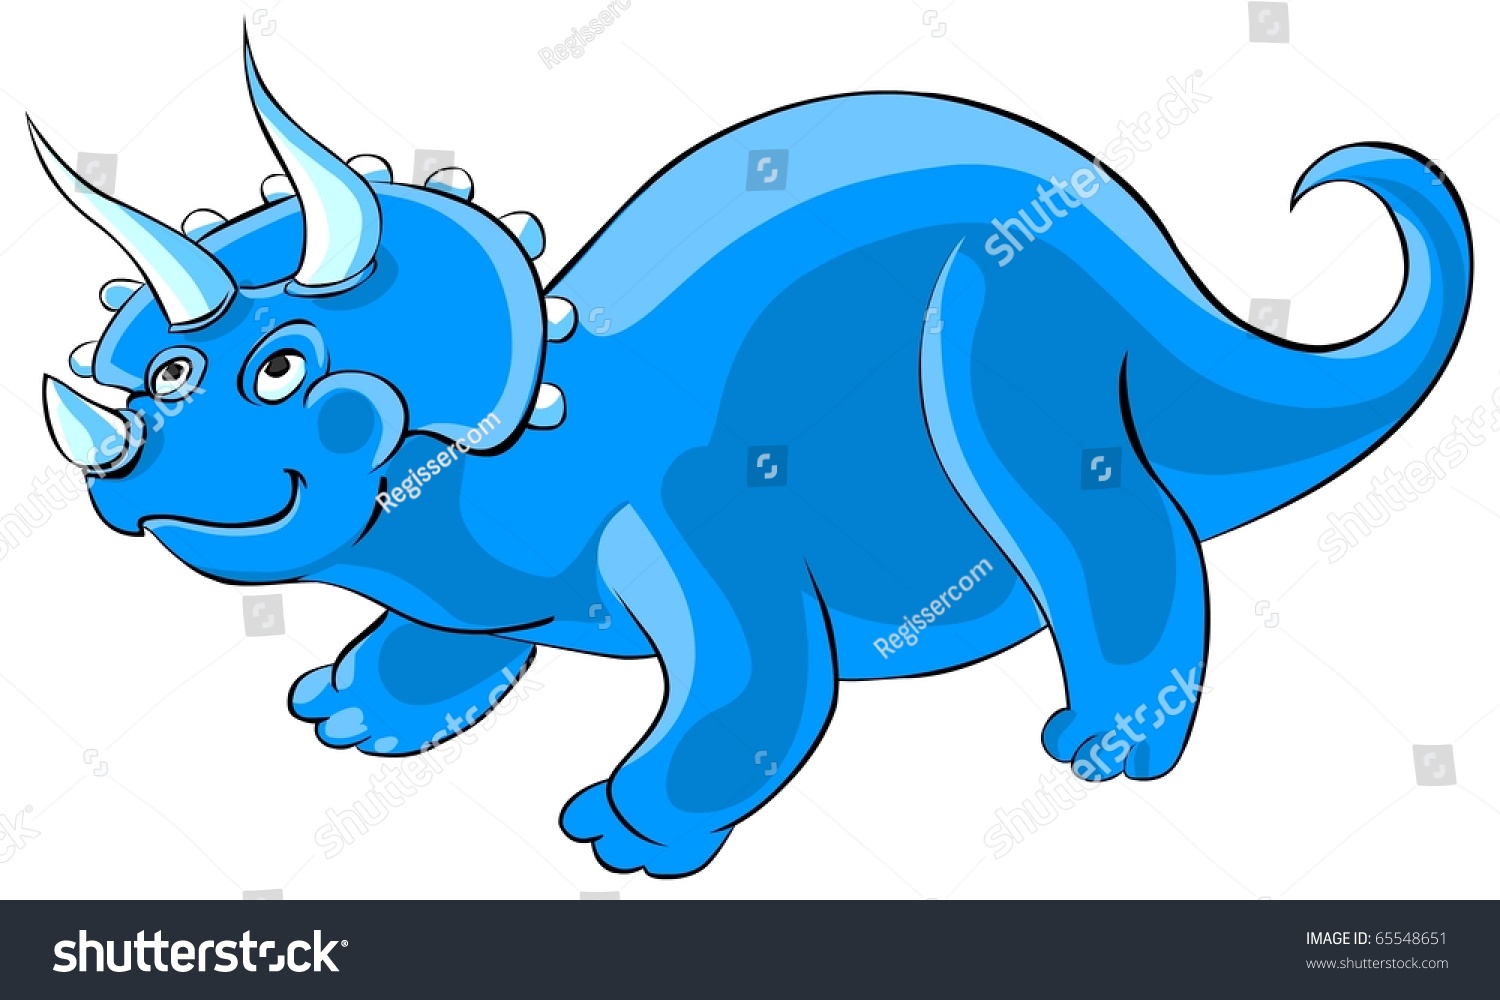 Cartoon Triceratops Dinosaur Stock Illustration 65548651 - Shutterstock